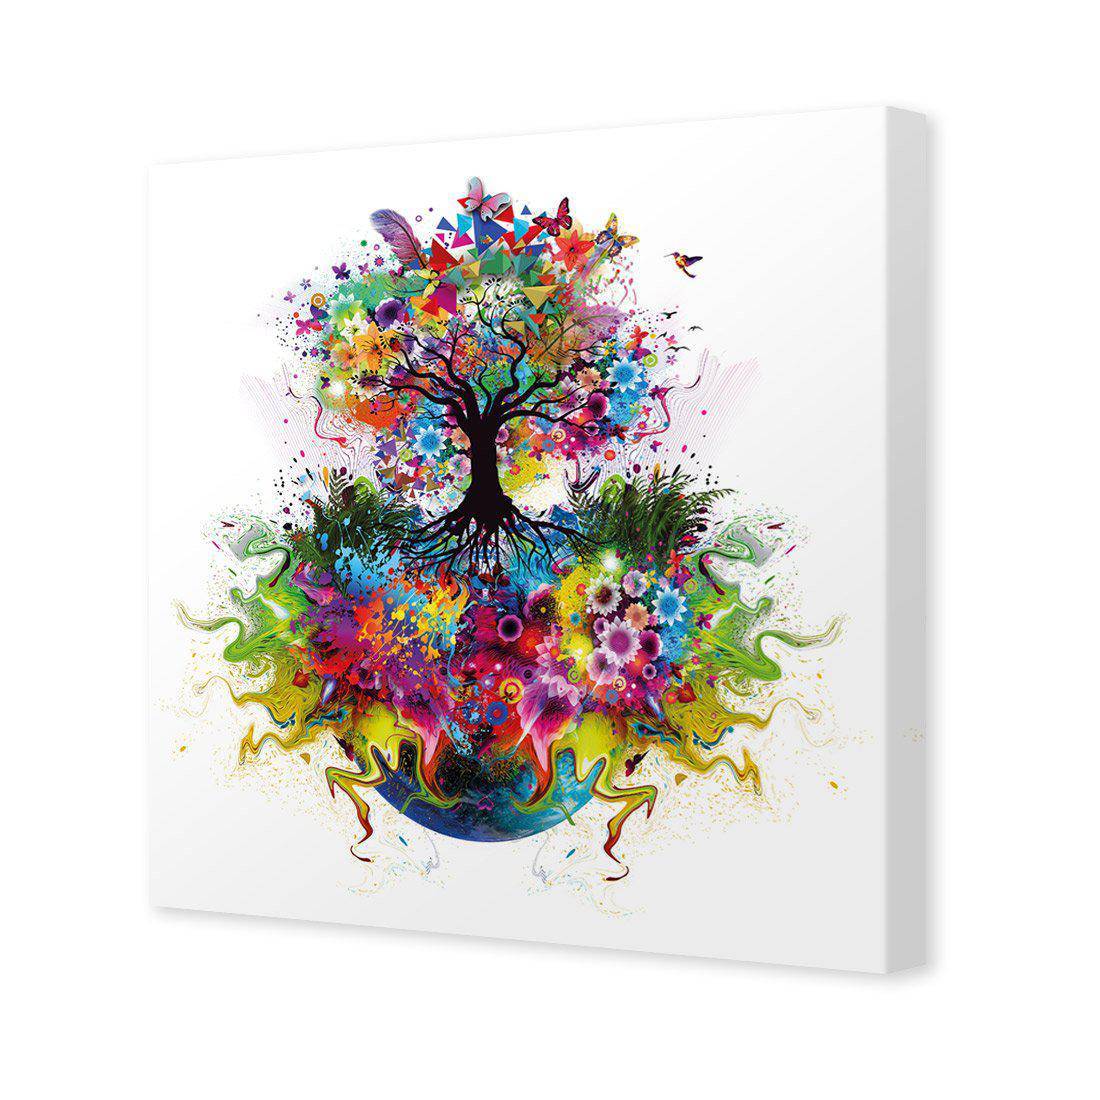 Flower Power Canvas Art-Canvas-Wall Art Designs-30x30cm-Canvas - No Frame-Wall Art Designs